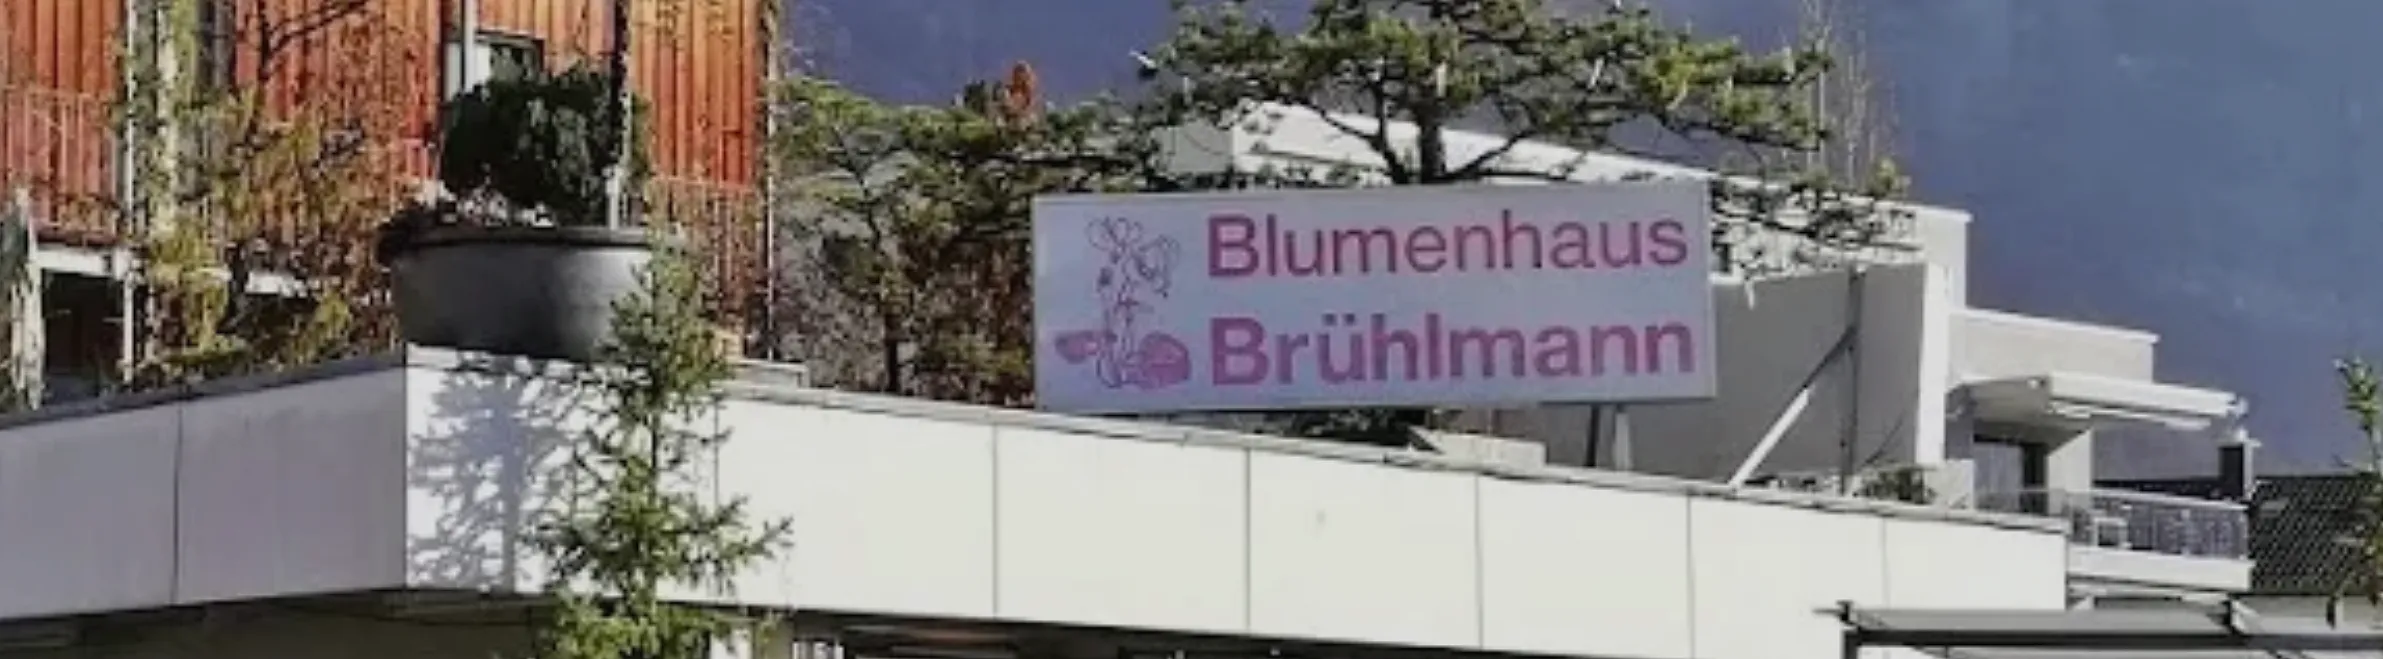 Blumenhaus & Gartenbau Brühlmann AG